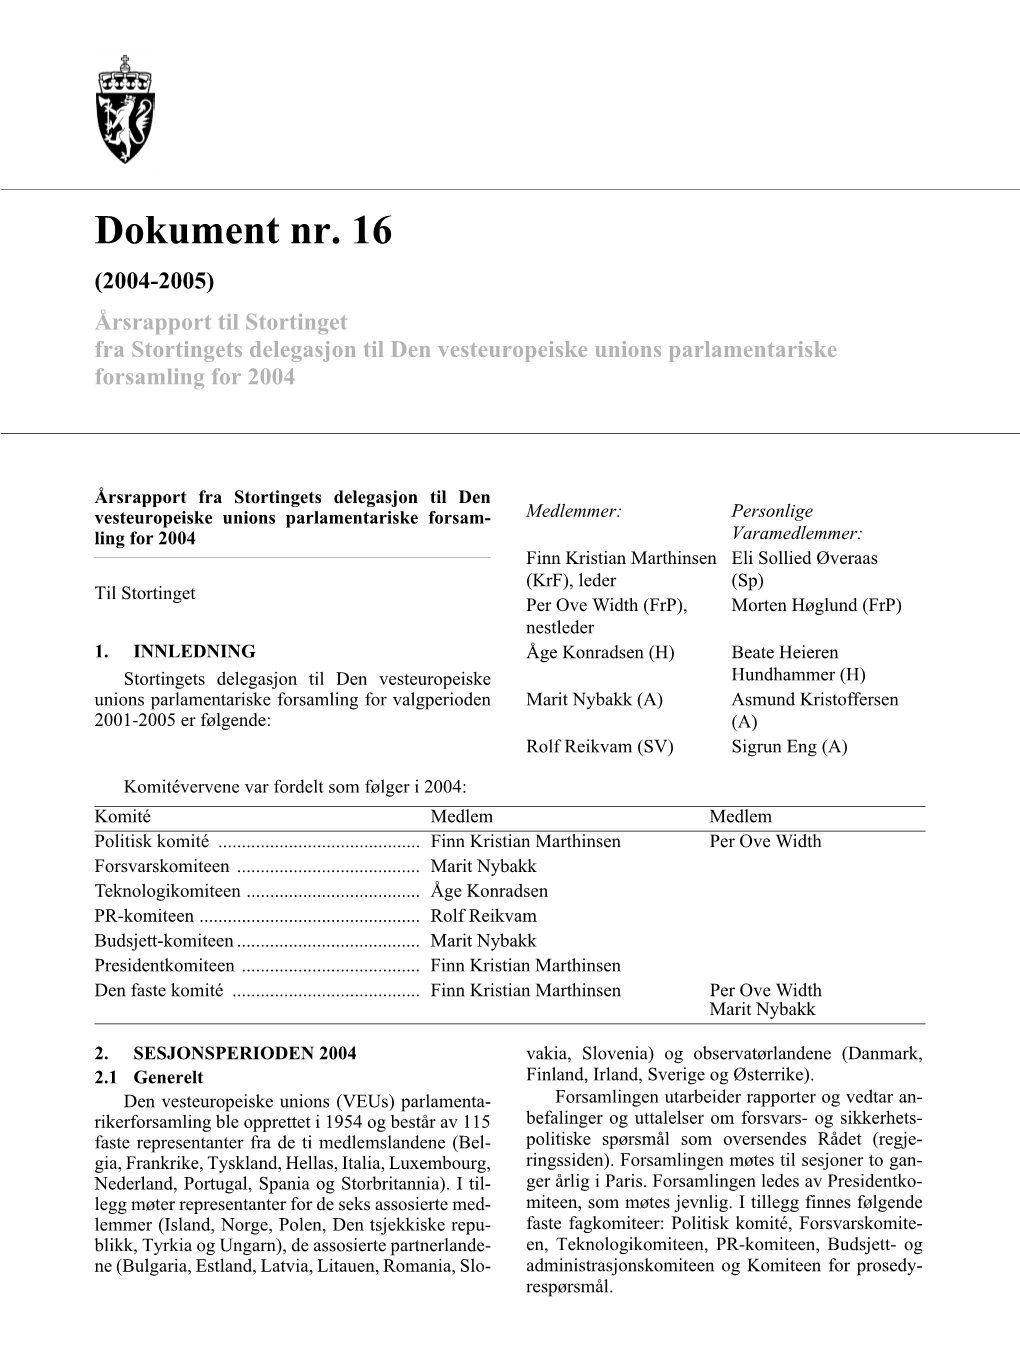 Dokument Nr. 16 (2004-2005) Årsrapport Til Stortinget Fra Stortingets Delegasjon Til Den Vesteuropeiske Unions Parlamentariske Forsamling for 2004